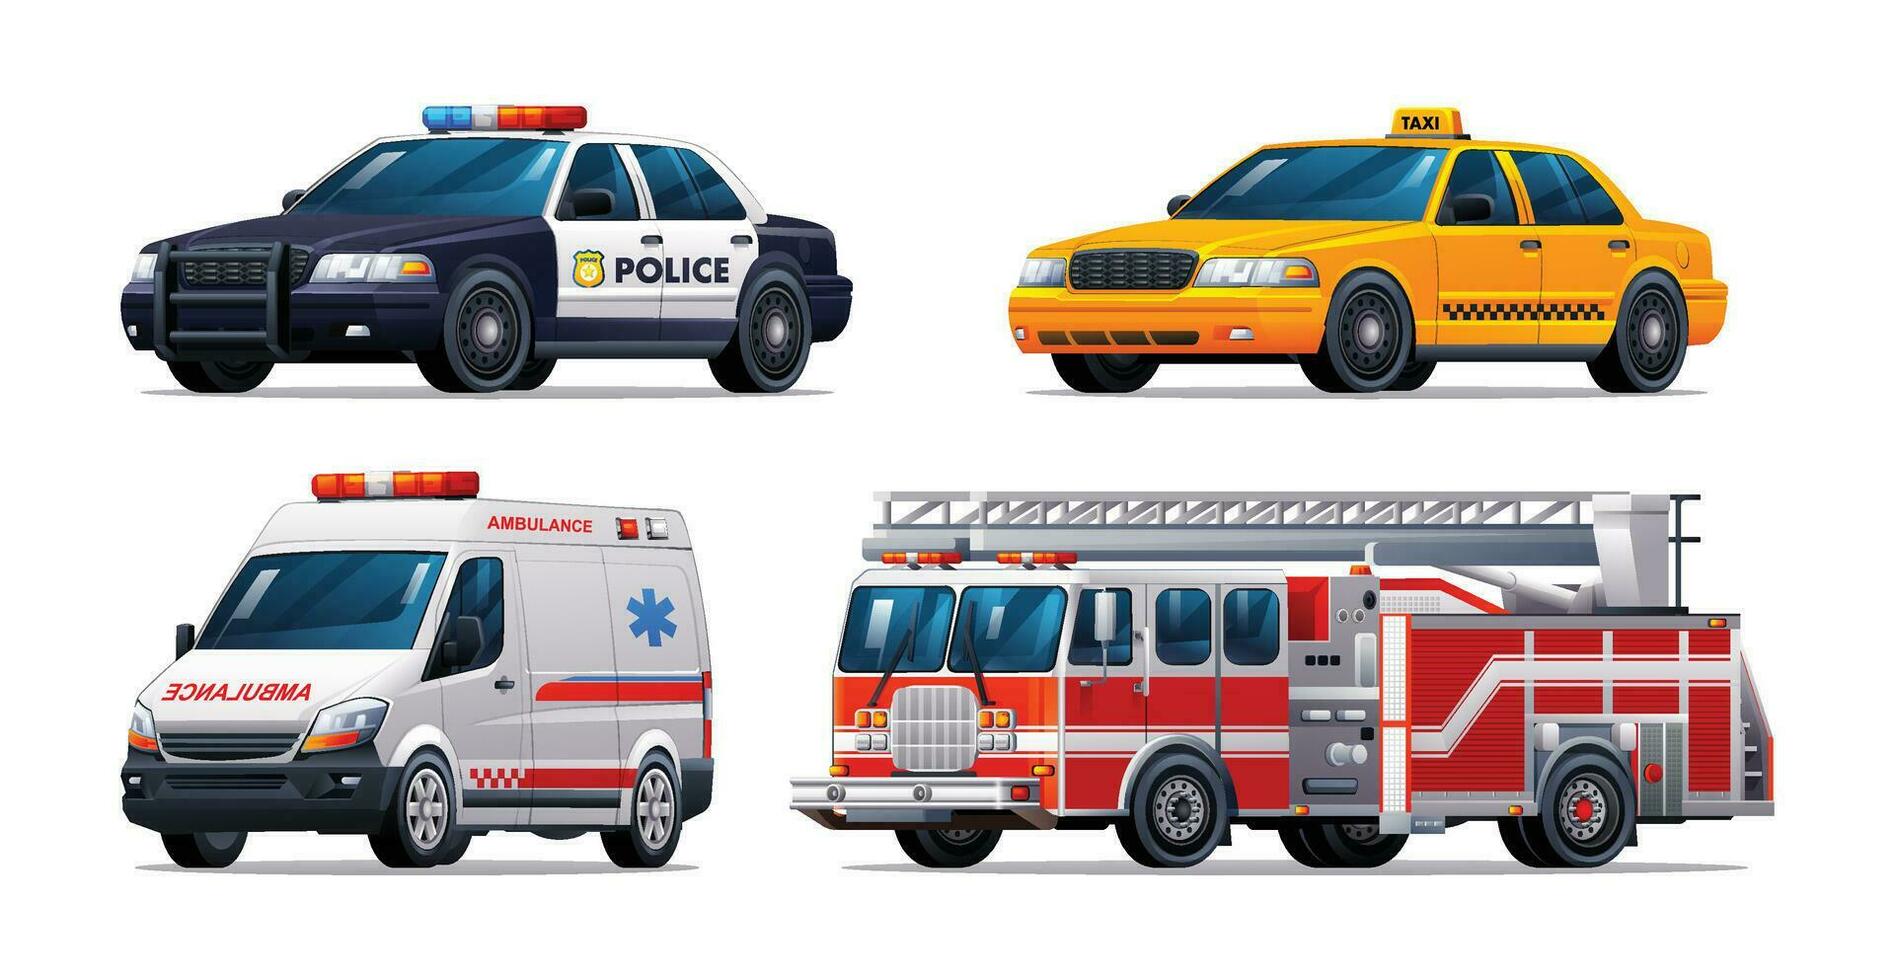 impostato di emergenza veicoli. polizia macchina, Taxi, ambulanza e fuoco camion. ufficiale emergenza servizio veicoli vettore illustrazione